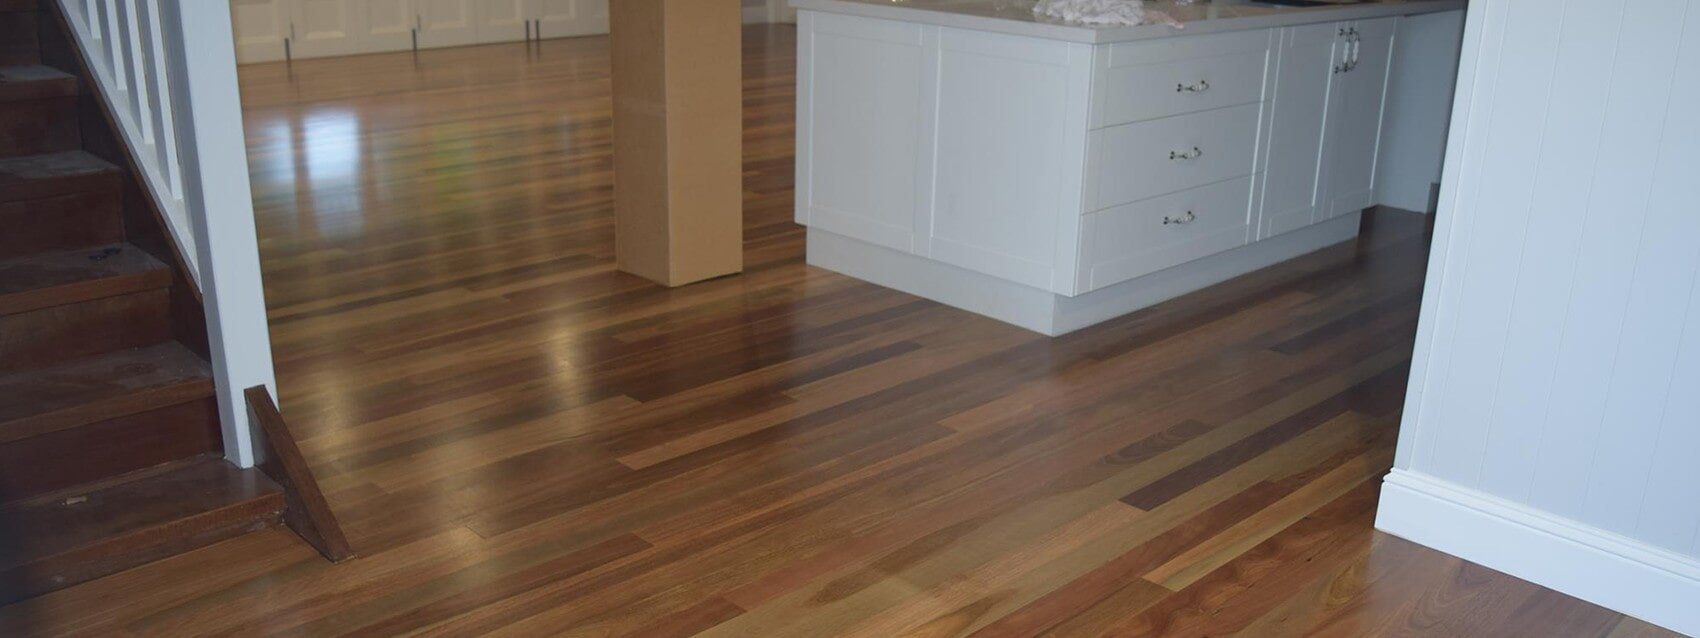 AJ's Cleaning & Floor Sanding - Clean Polished Floor